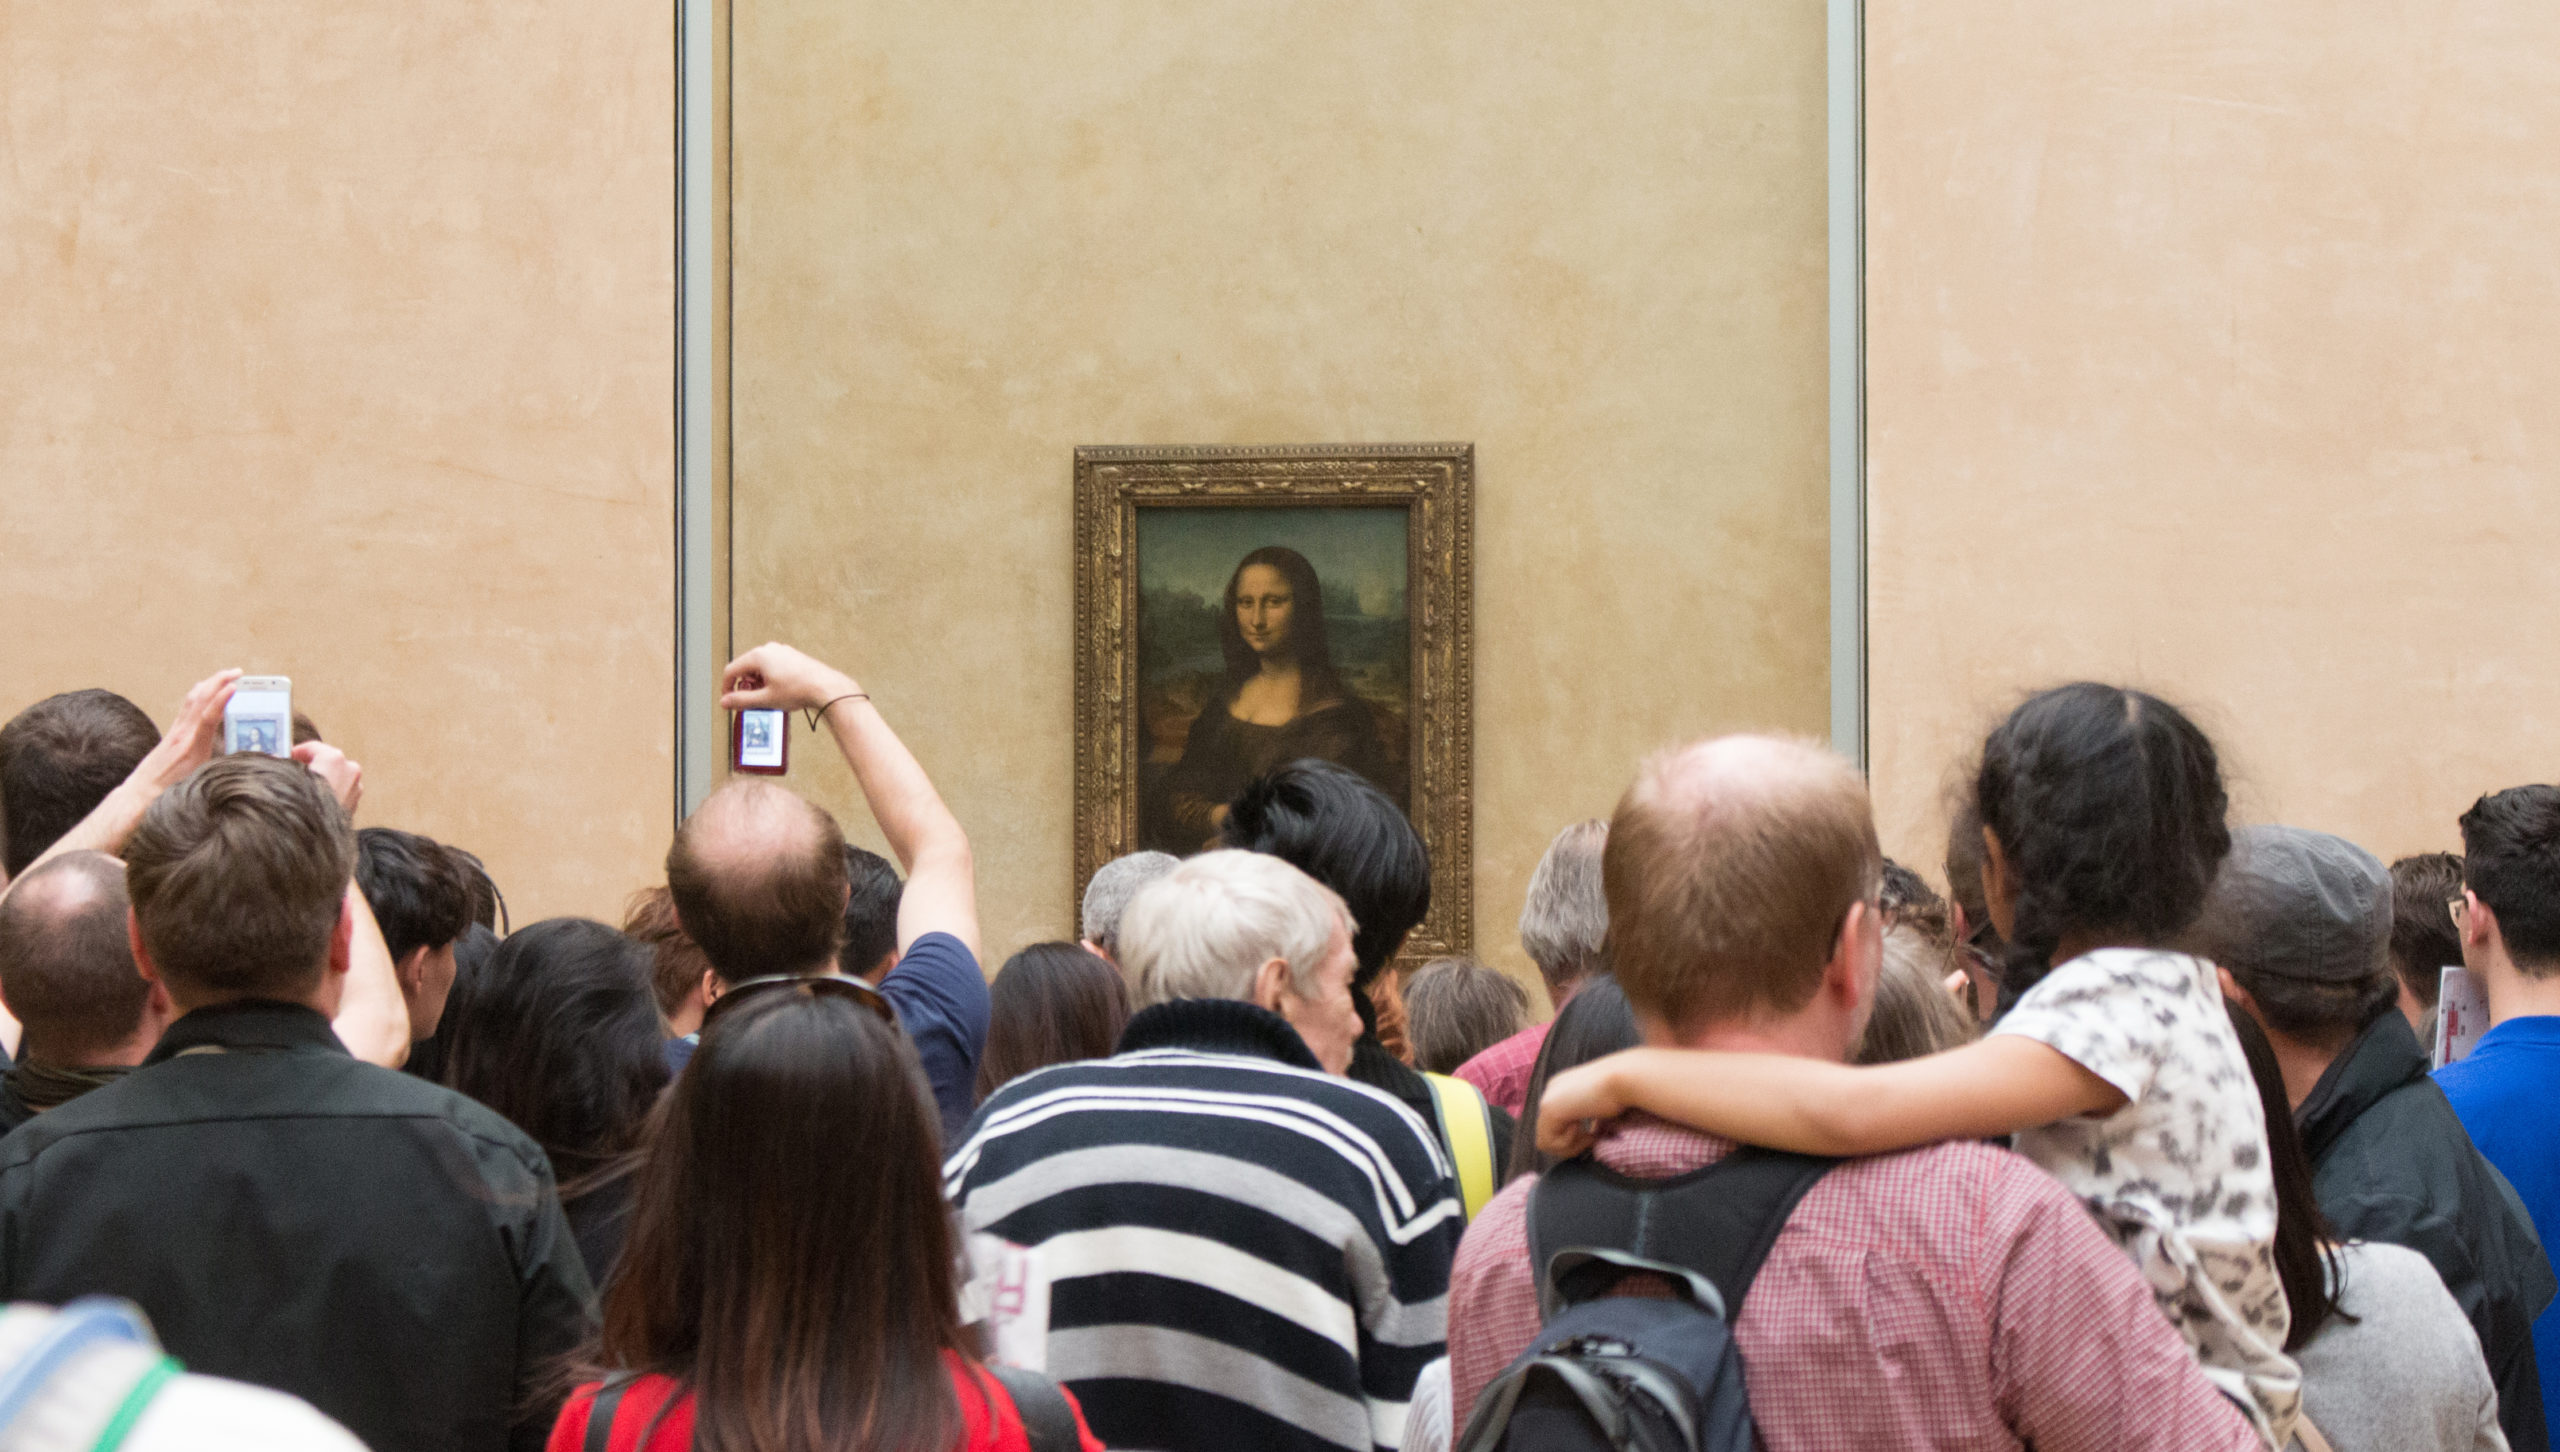 Xx Monalisa Ka Video - Mona Lisa (article) | Leonardo da Vinci | Khan Academy